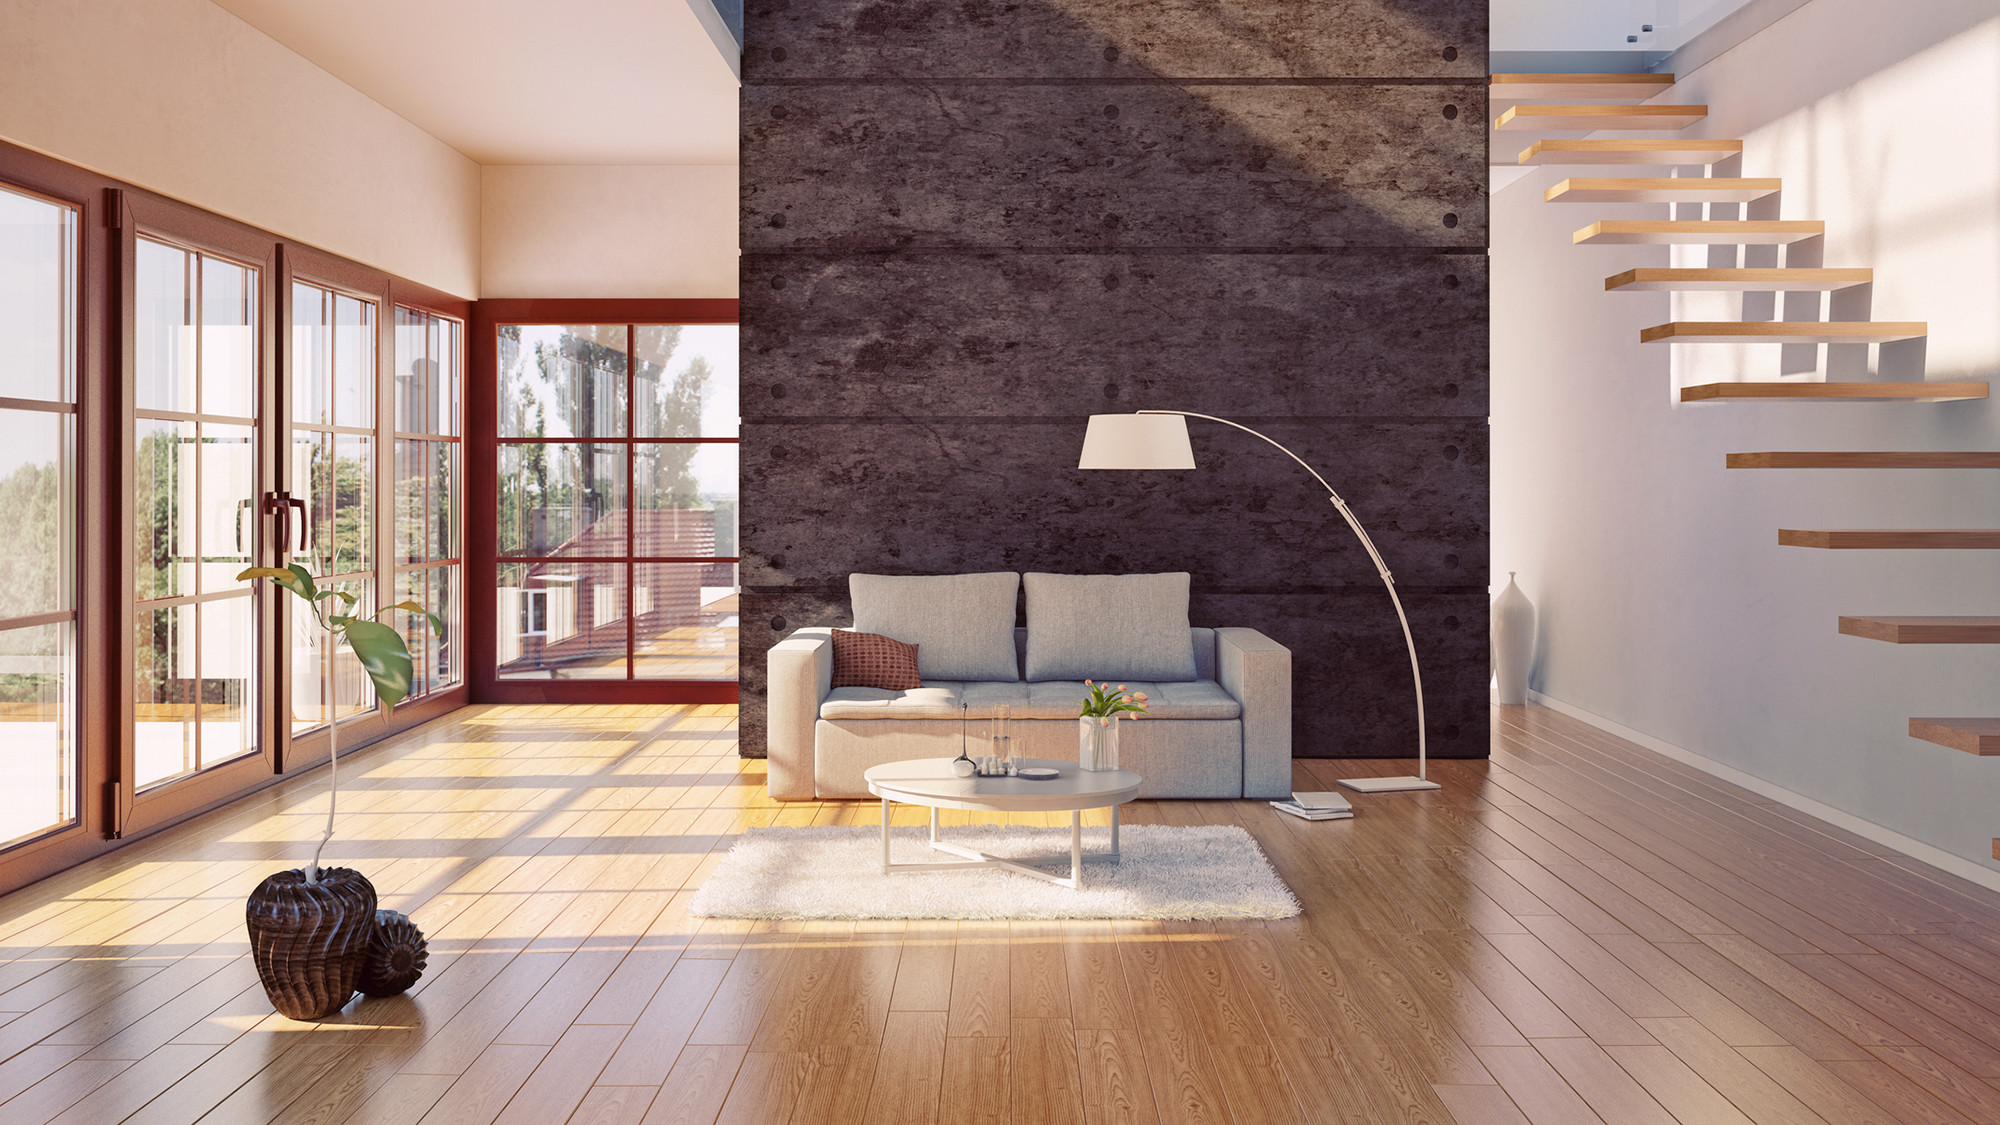 hardwood floor vs wood tile of do hardwood floors provide the best return on investment realtor coma in hardwood floors investment